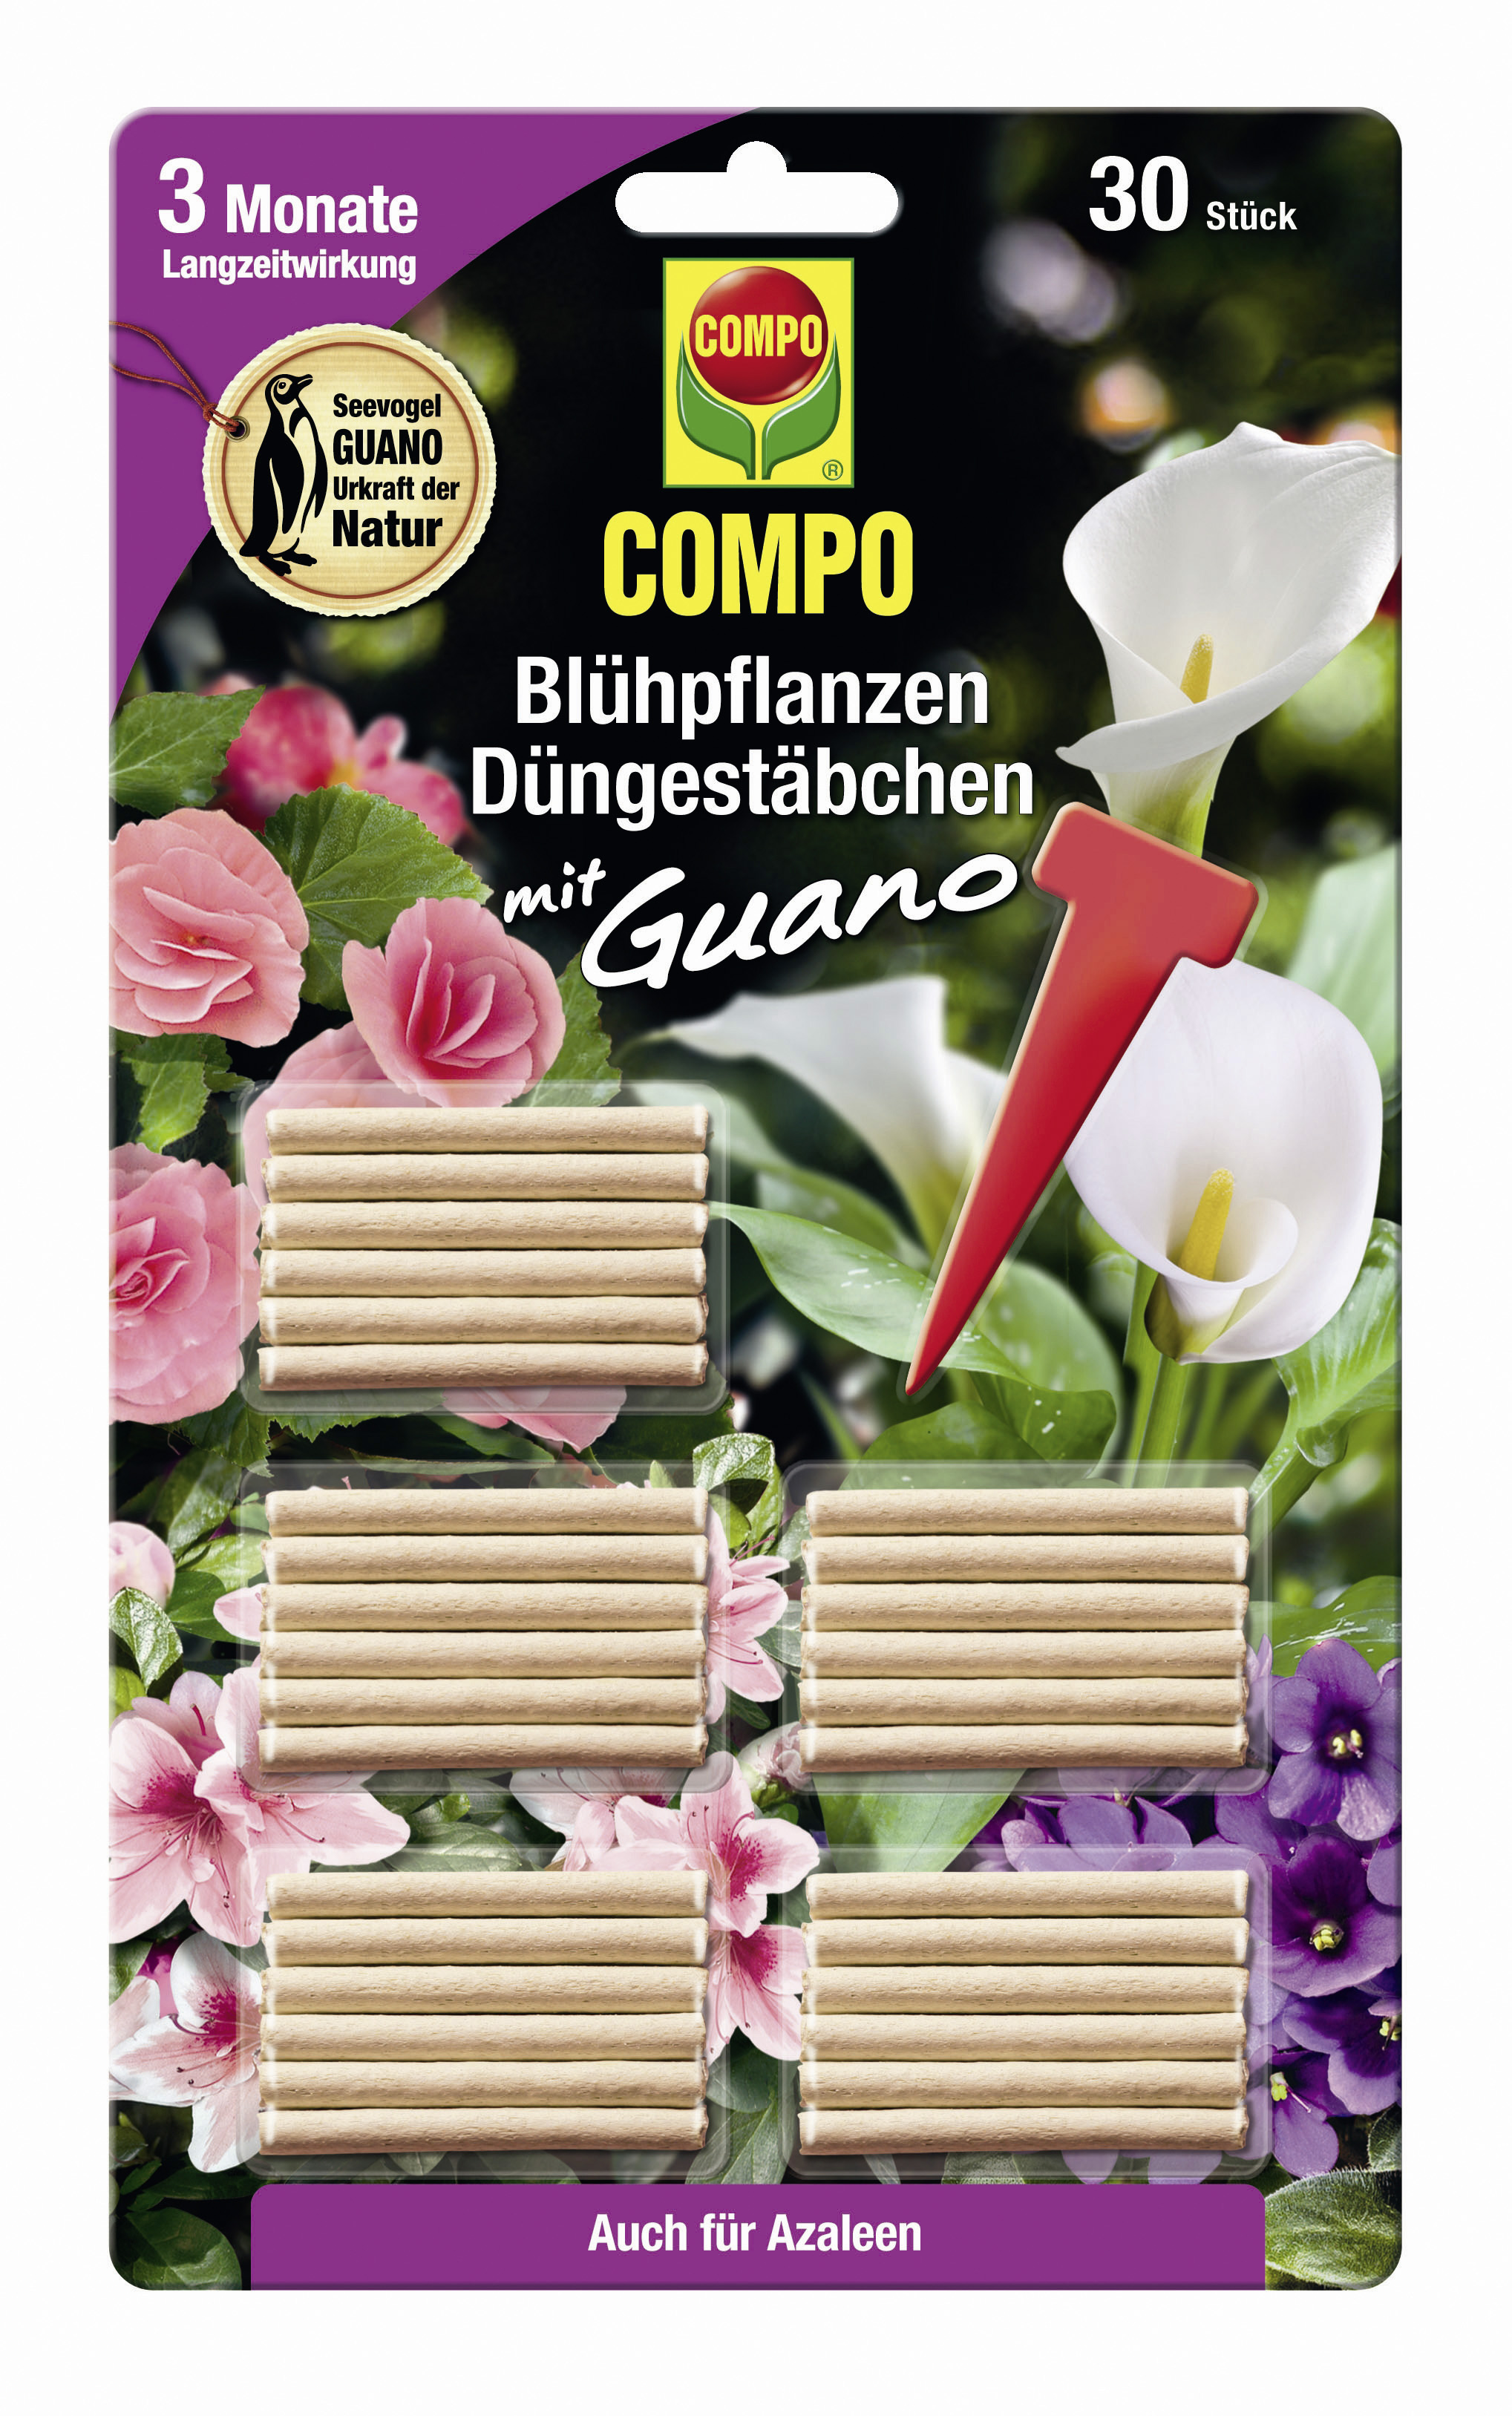 COMPO Blühpflanzen Düngestäbchen mit GUANO